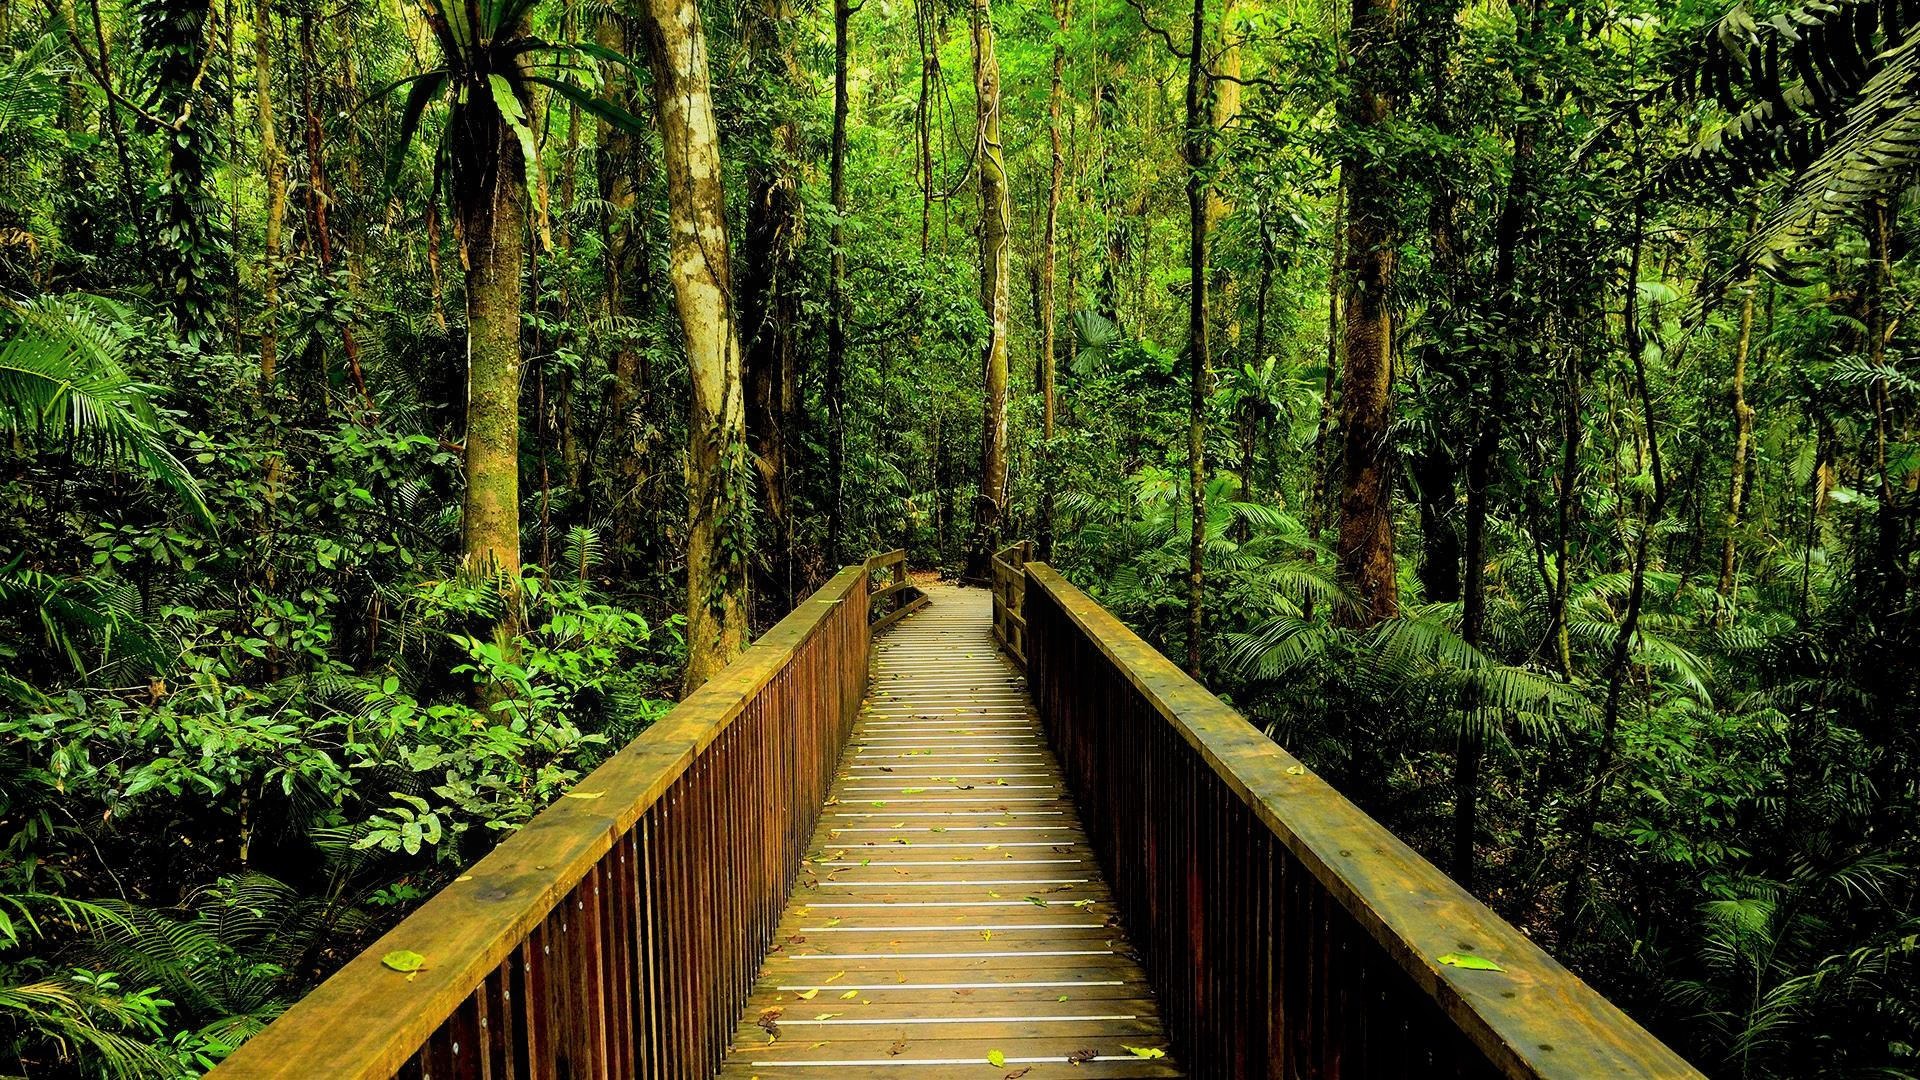 man made, bridge, forest, green, jungle, rainforest, wooden, bridges